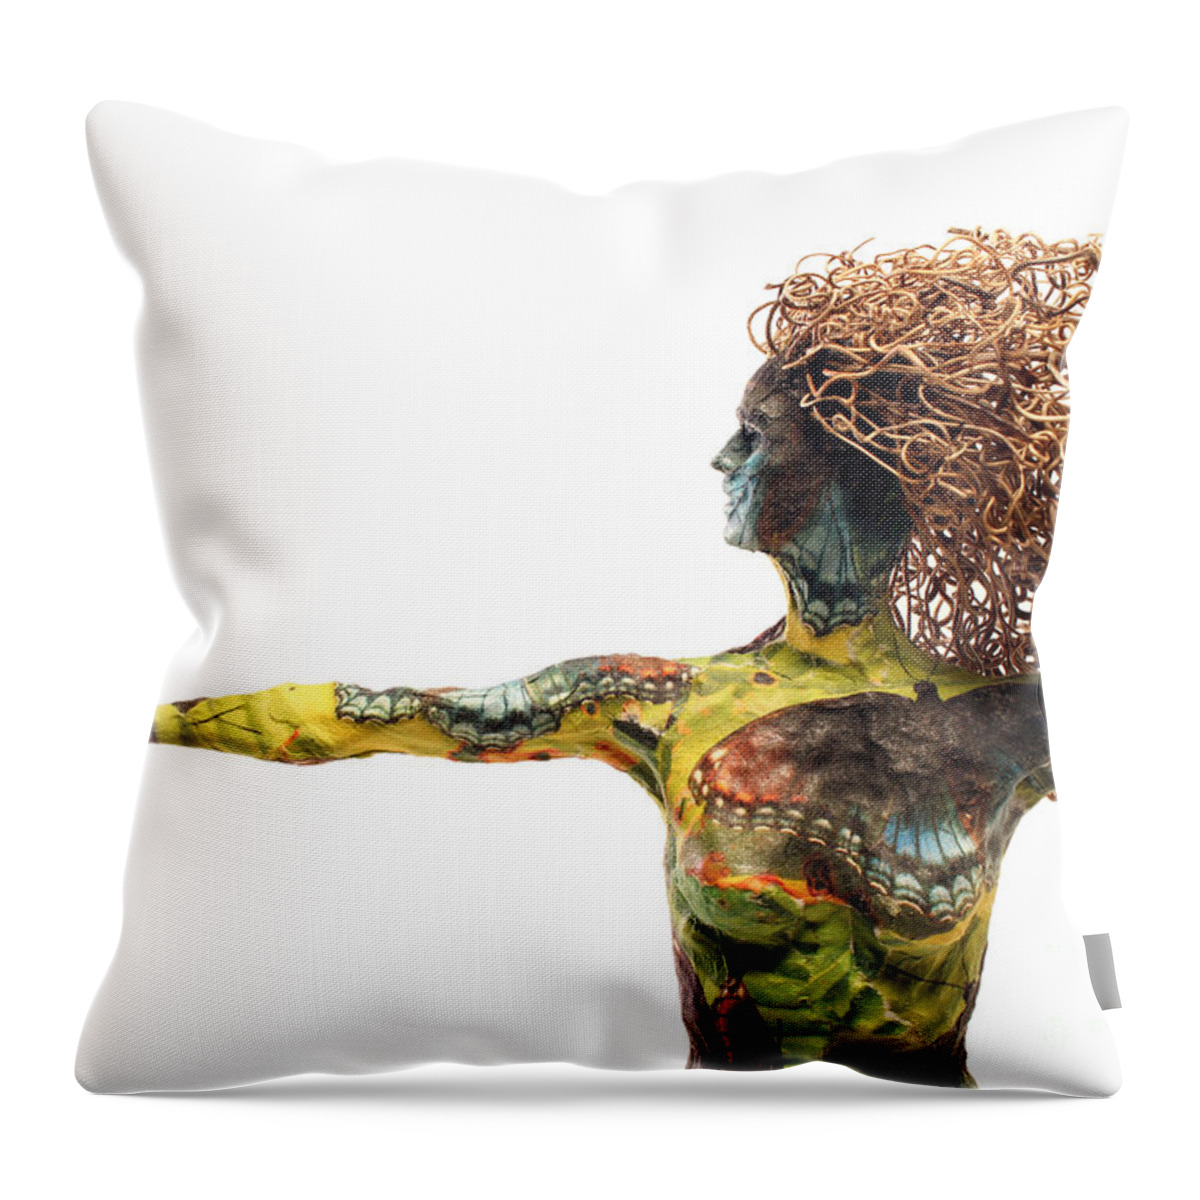 Art Throw Pillow featuring the mixed media Alight A Sculpture by Adam Long by Adam Long